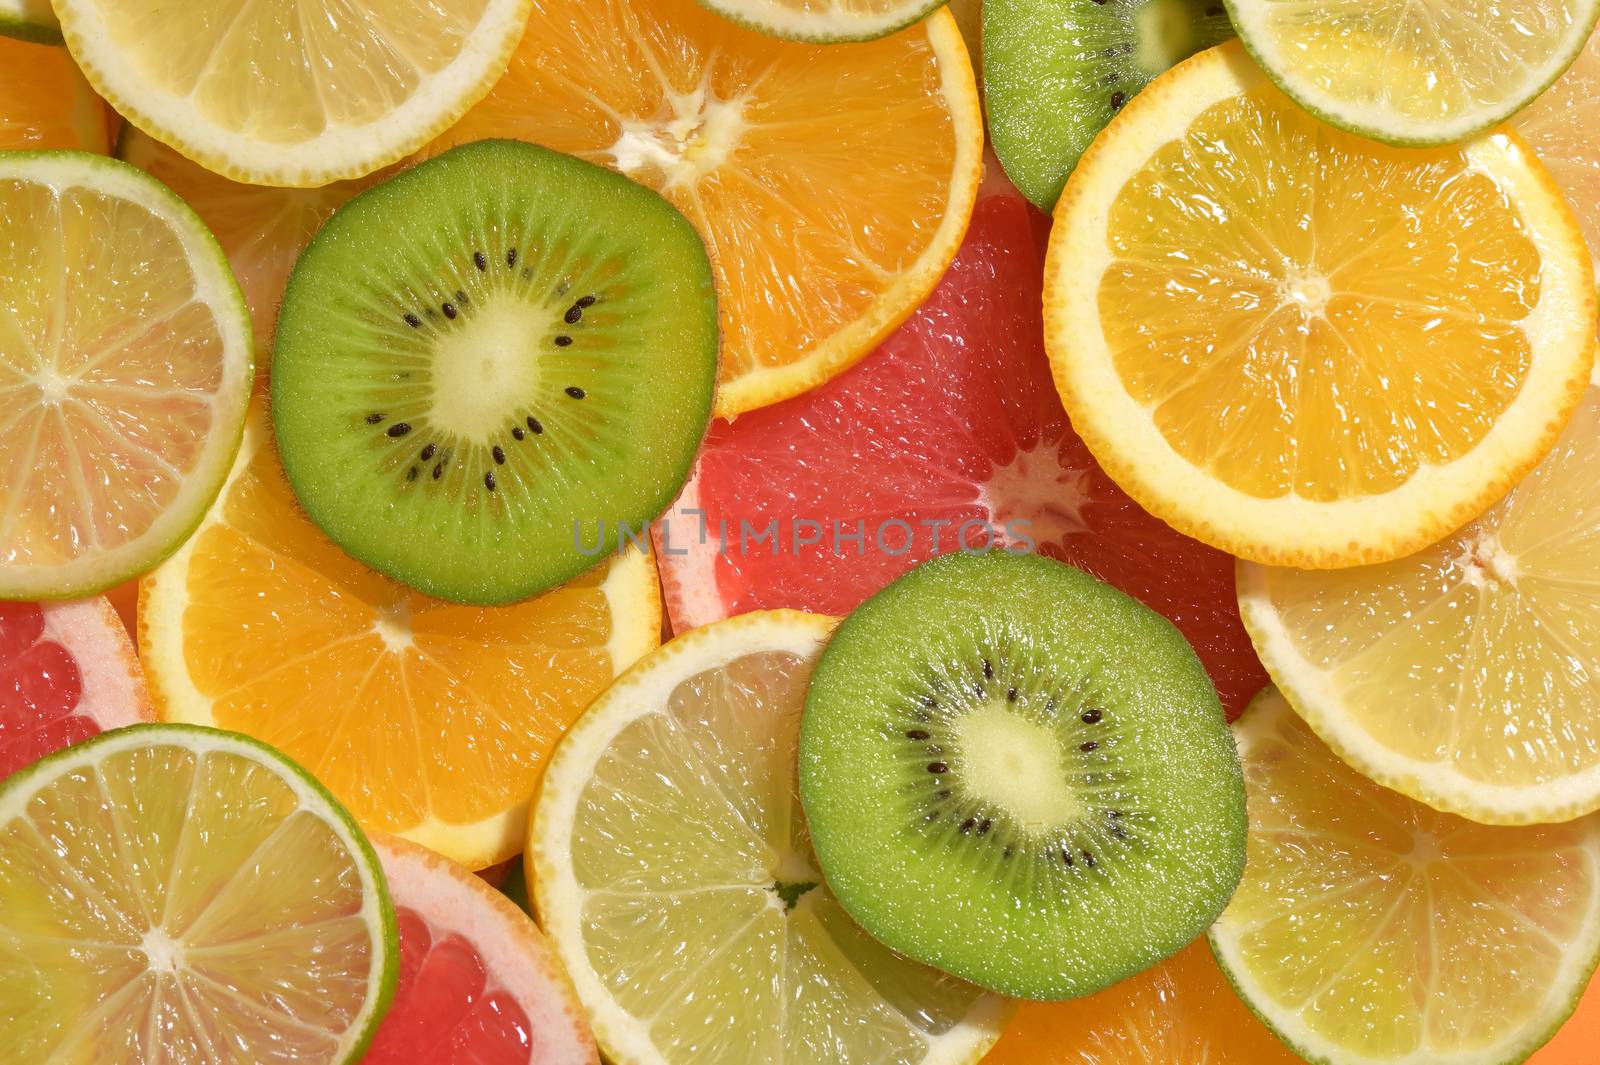 Fruit Slices Background With Lemon, Lime, Kiwi and Orange